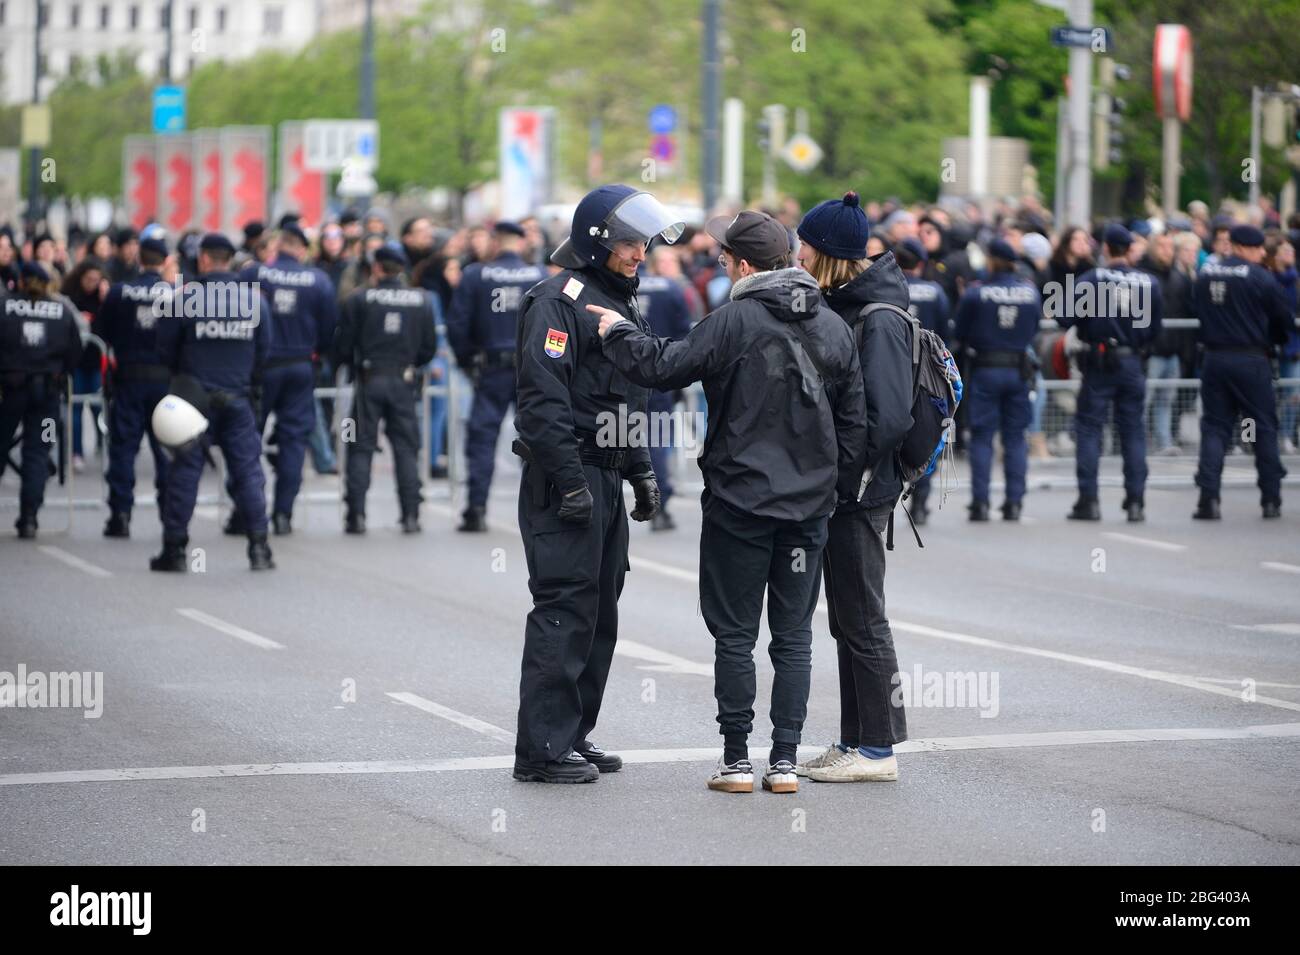 Vienne, Autriche. Archiver l'image à partir du 13 avril 2019. Les unités de police autrichiennes lors d'une manifestation du Mouvement Identitarien Autriche. Banque D'Images